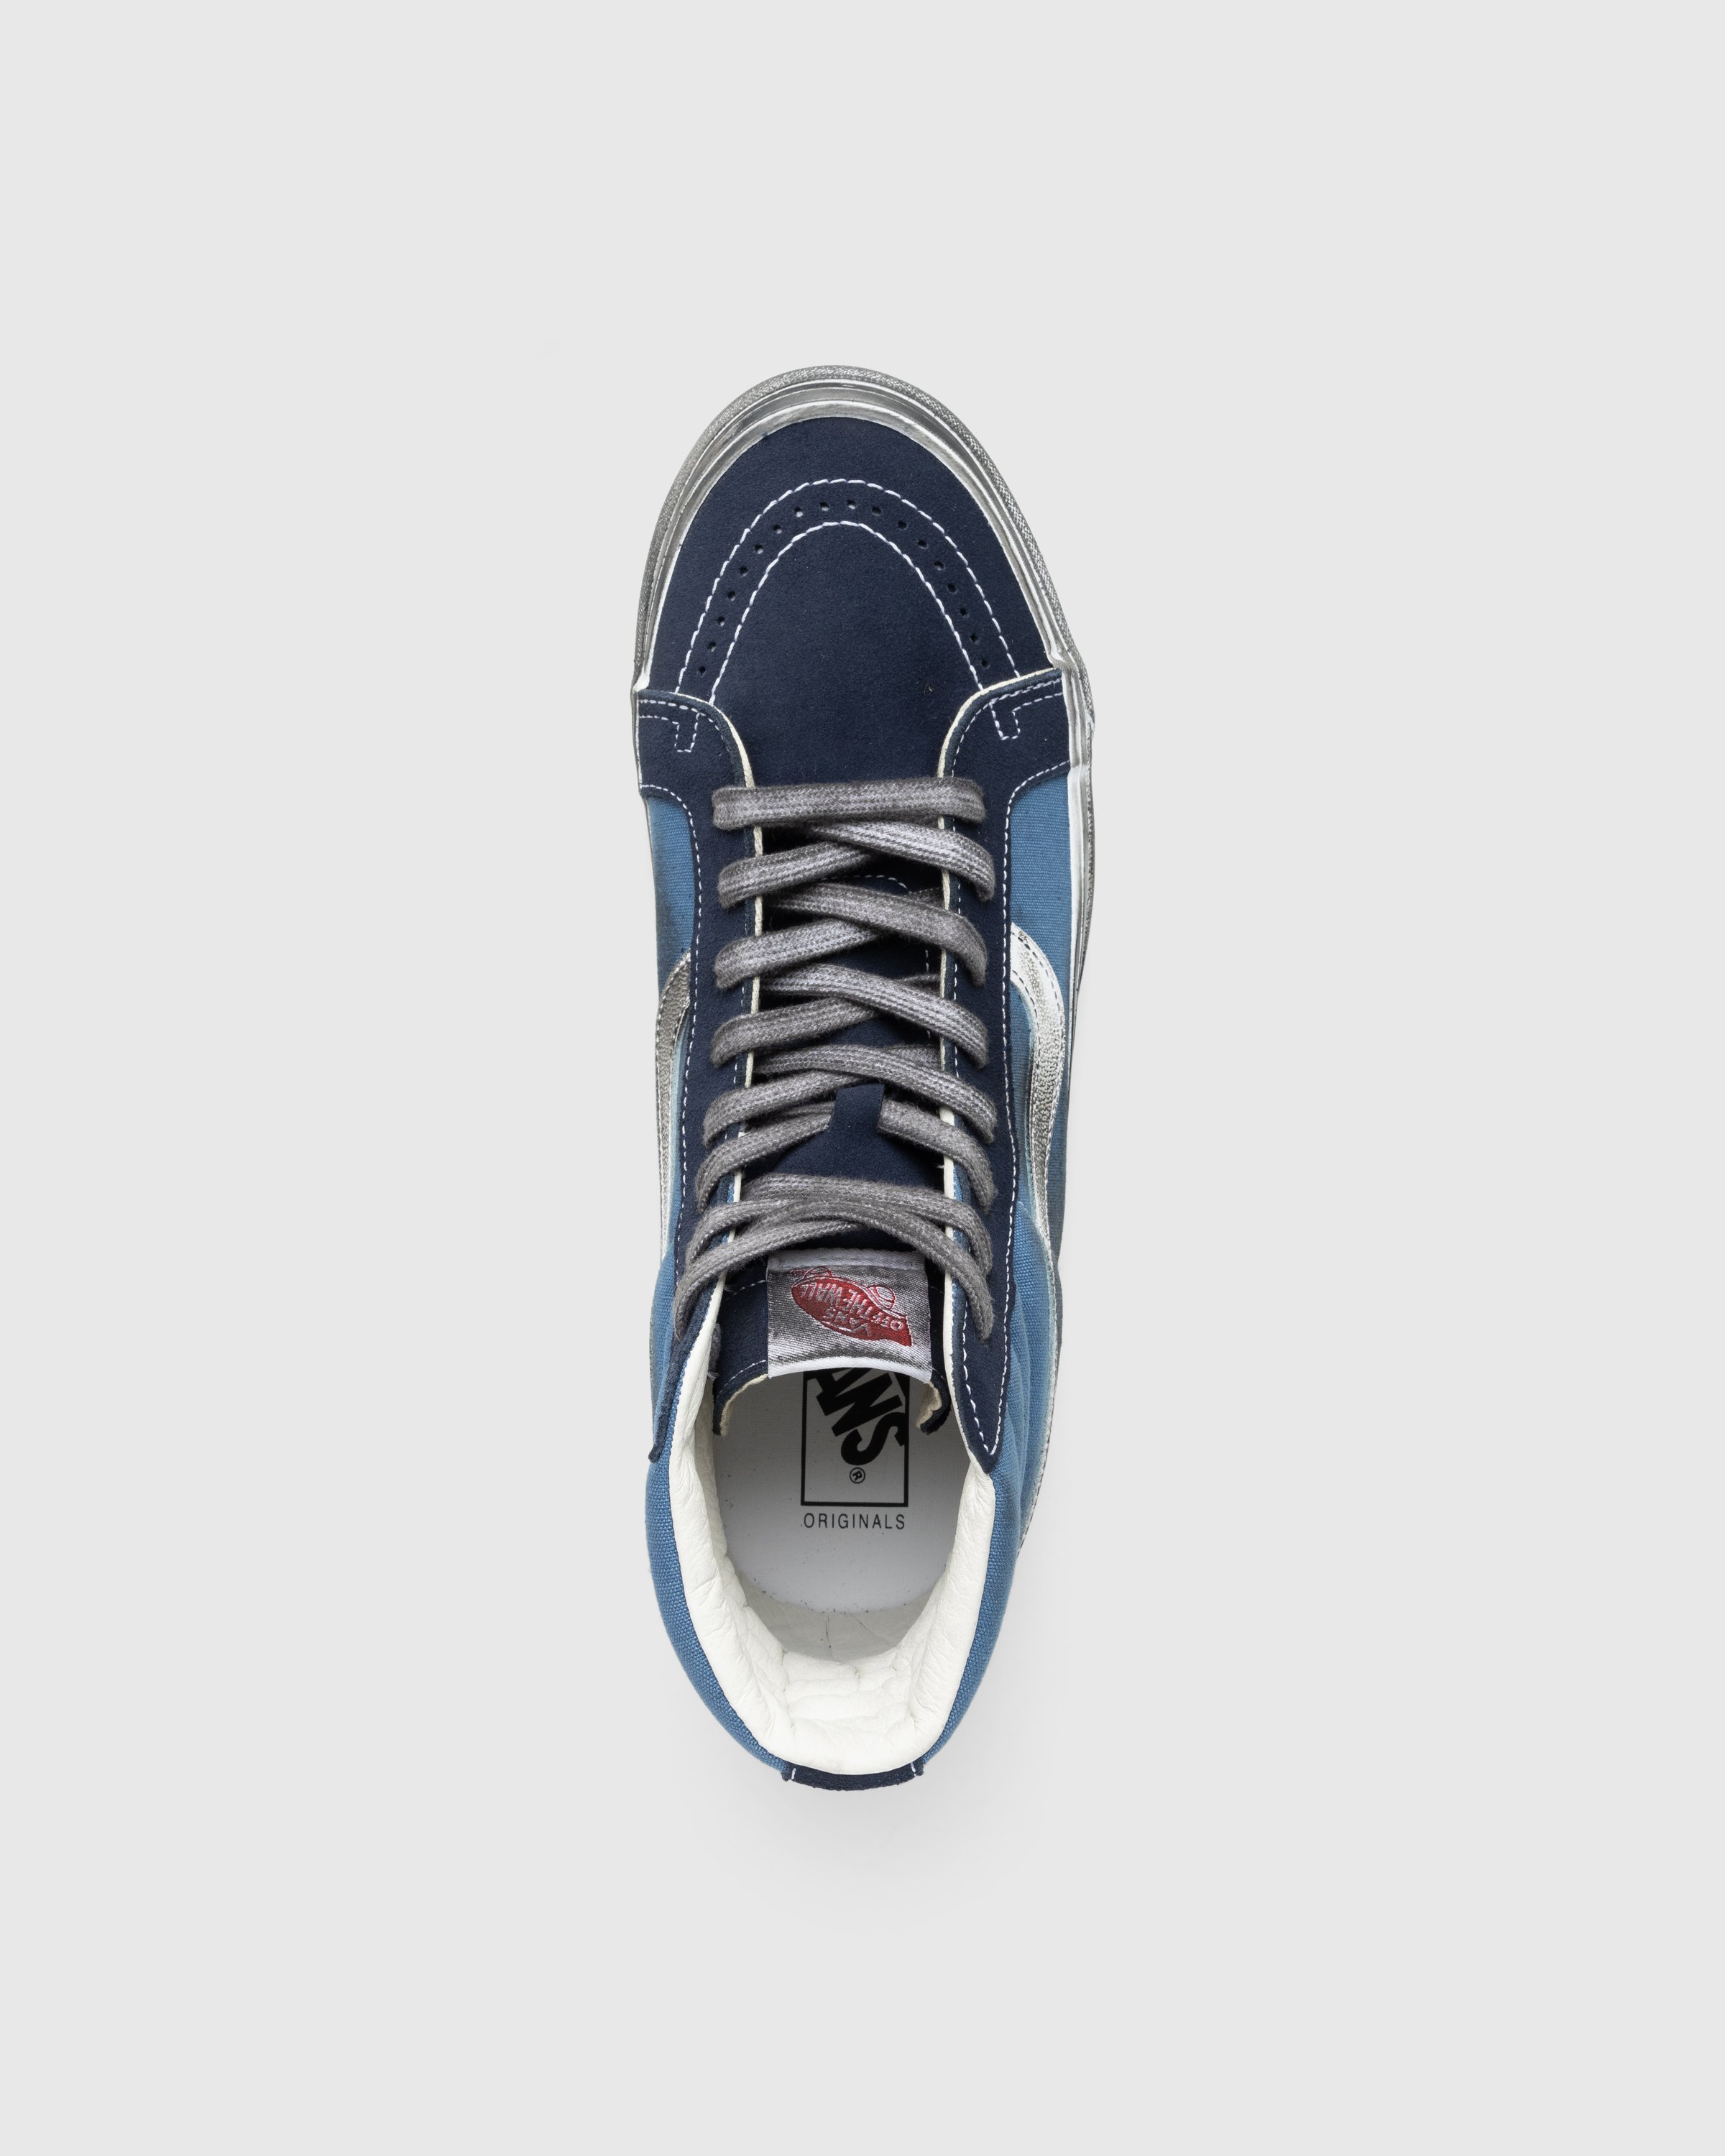 Vans - UA OG SK8-Hi LX STRE DKBRN - Footwear - Blue - Image 5